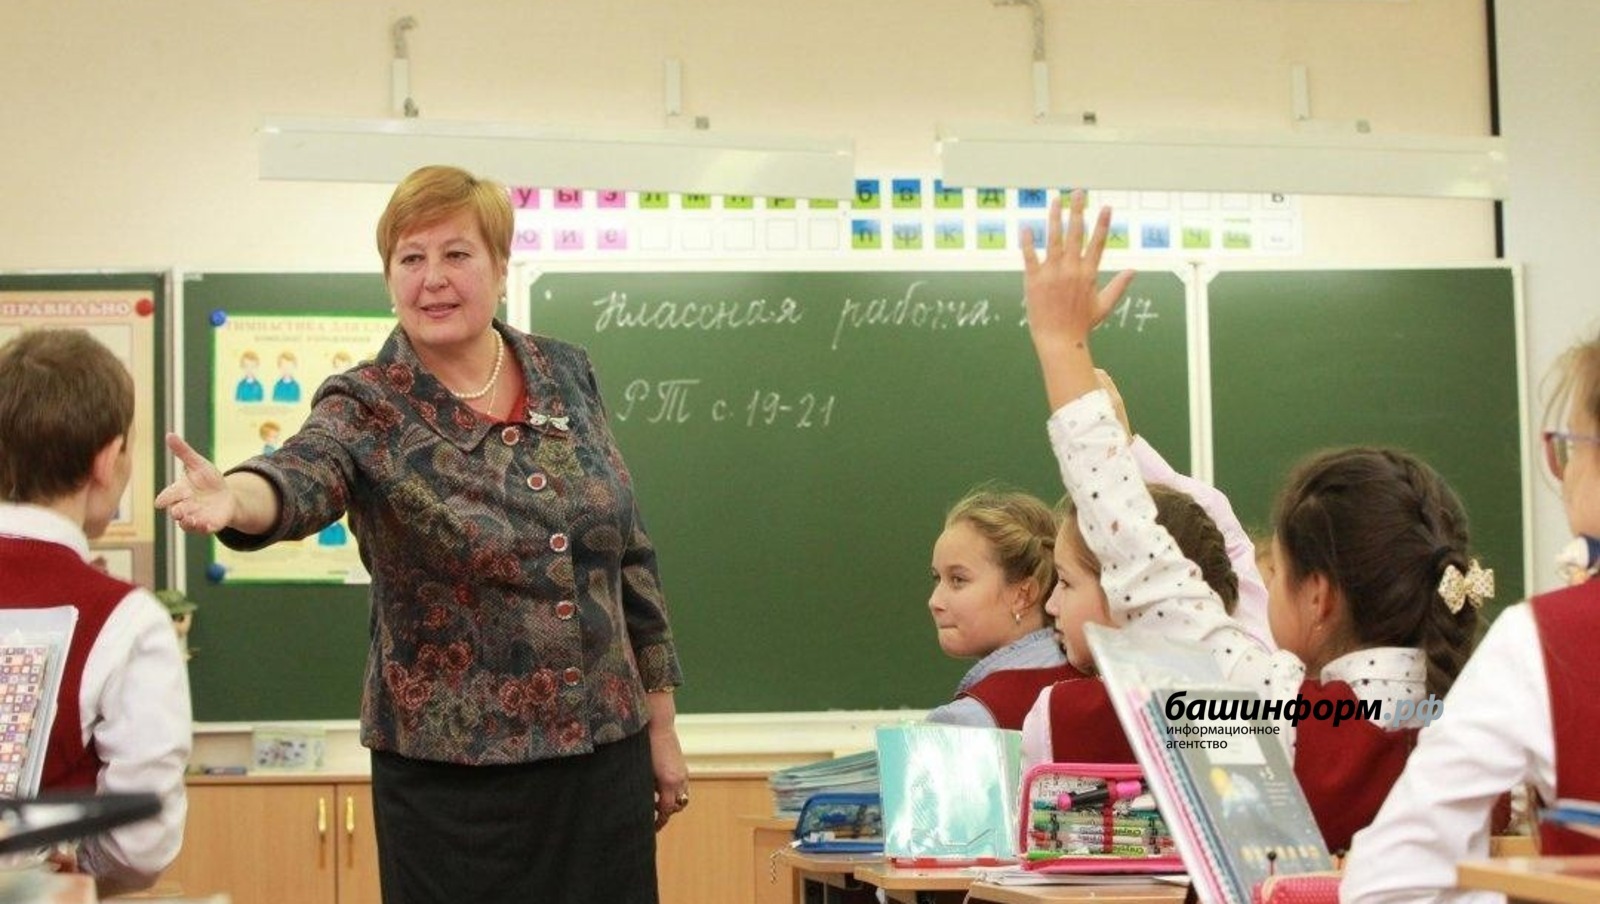 25 педагогов Башкирии поедут на форум классных руководителей в Москву